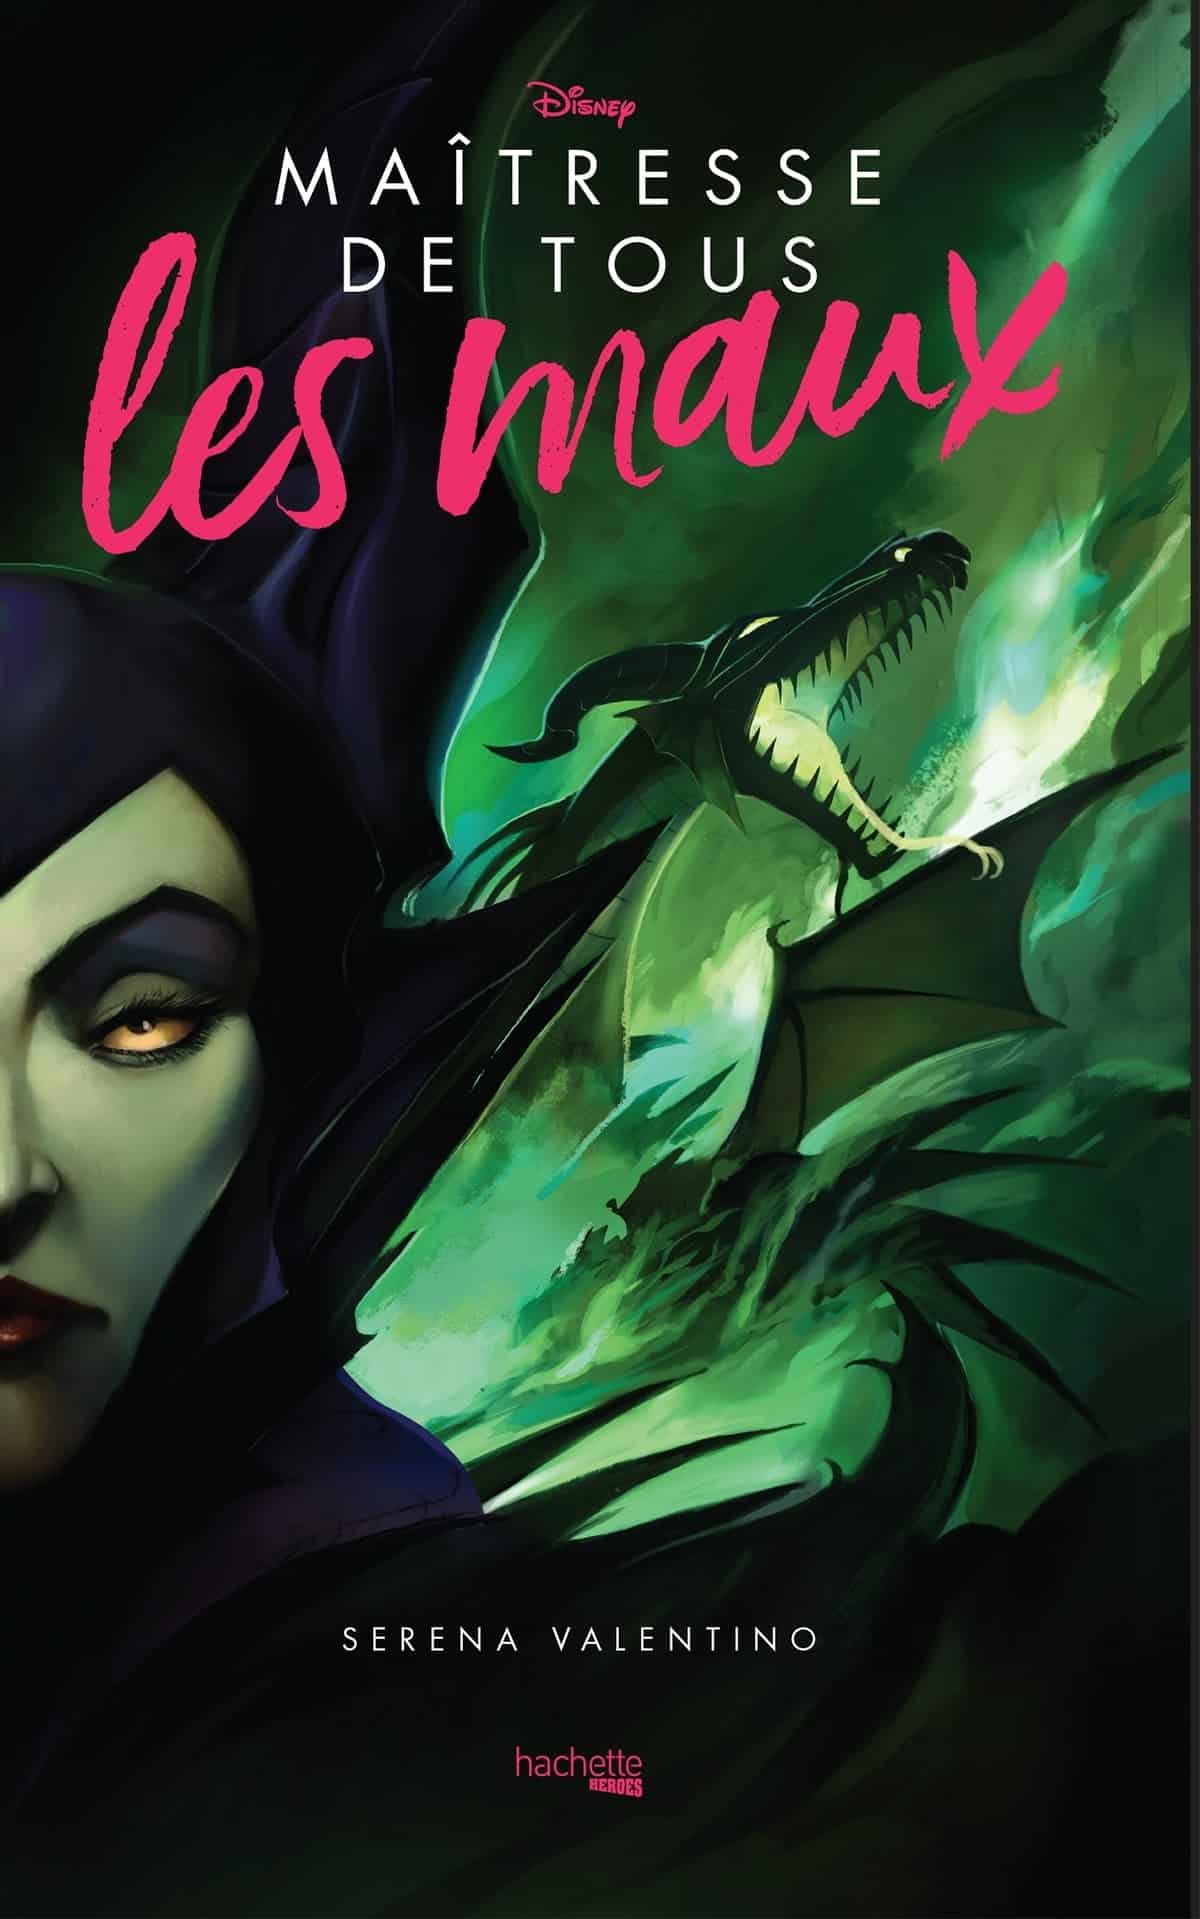 Couverture du livre "maîtresse de tous les maux" de Serena Valentino, présentant un portrait stylisé de Maléfique avec un dragon vert en arrière-plan, vibrant dans des tons sombres de